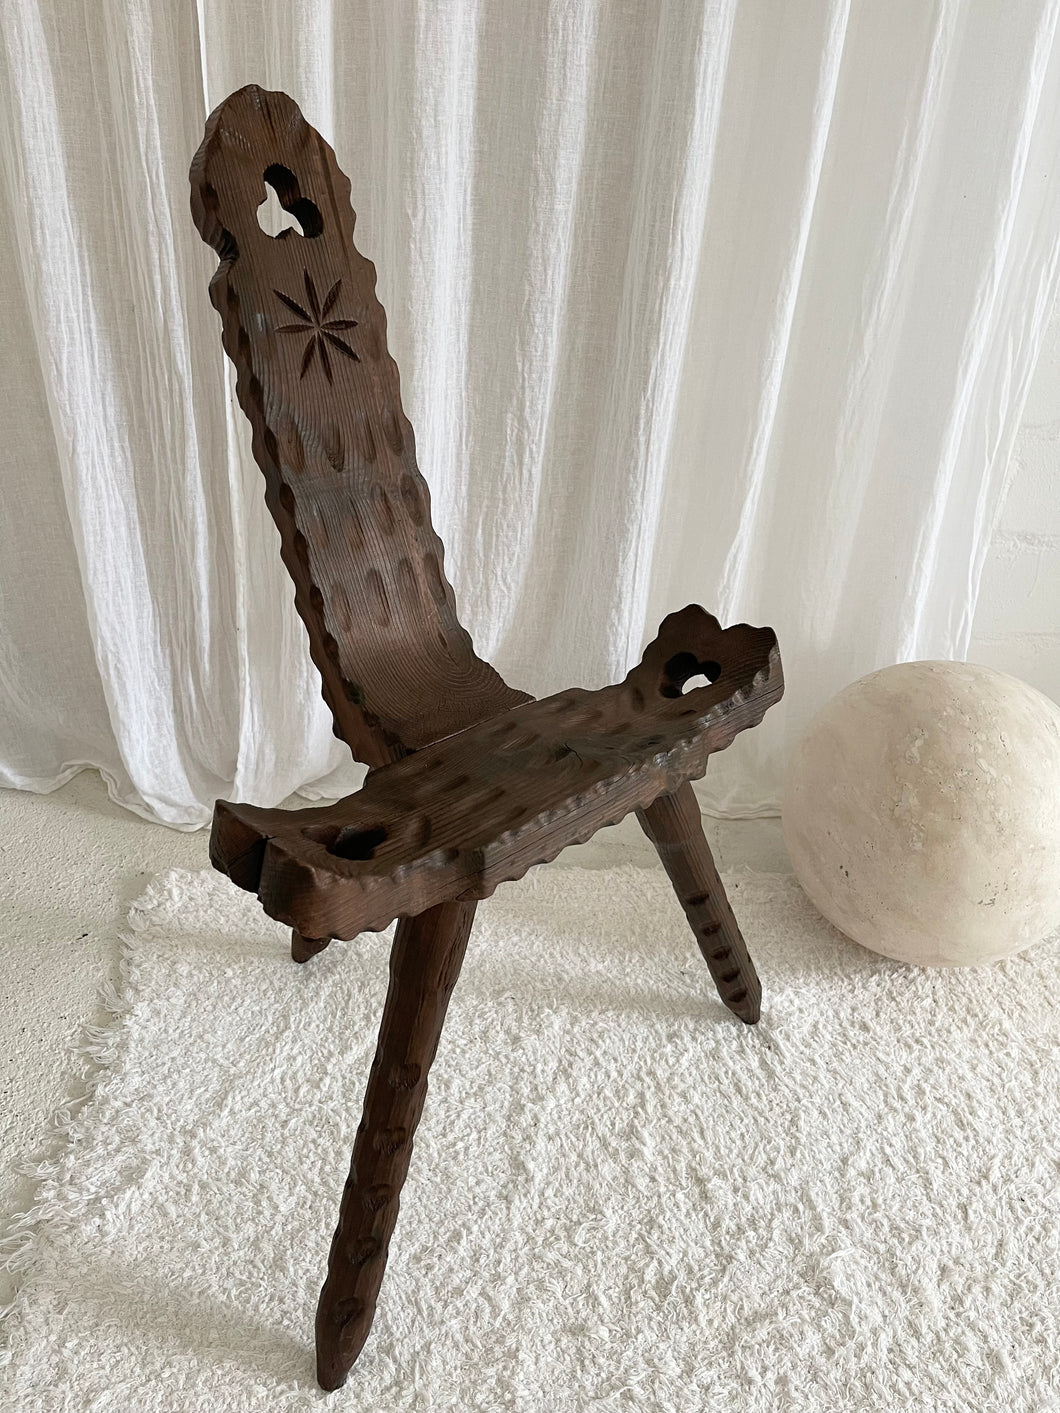 Brutalist wooden chair